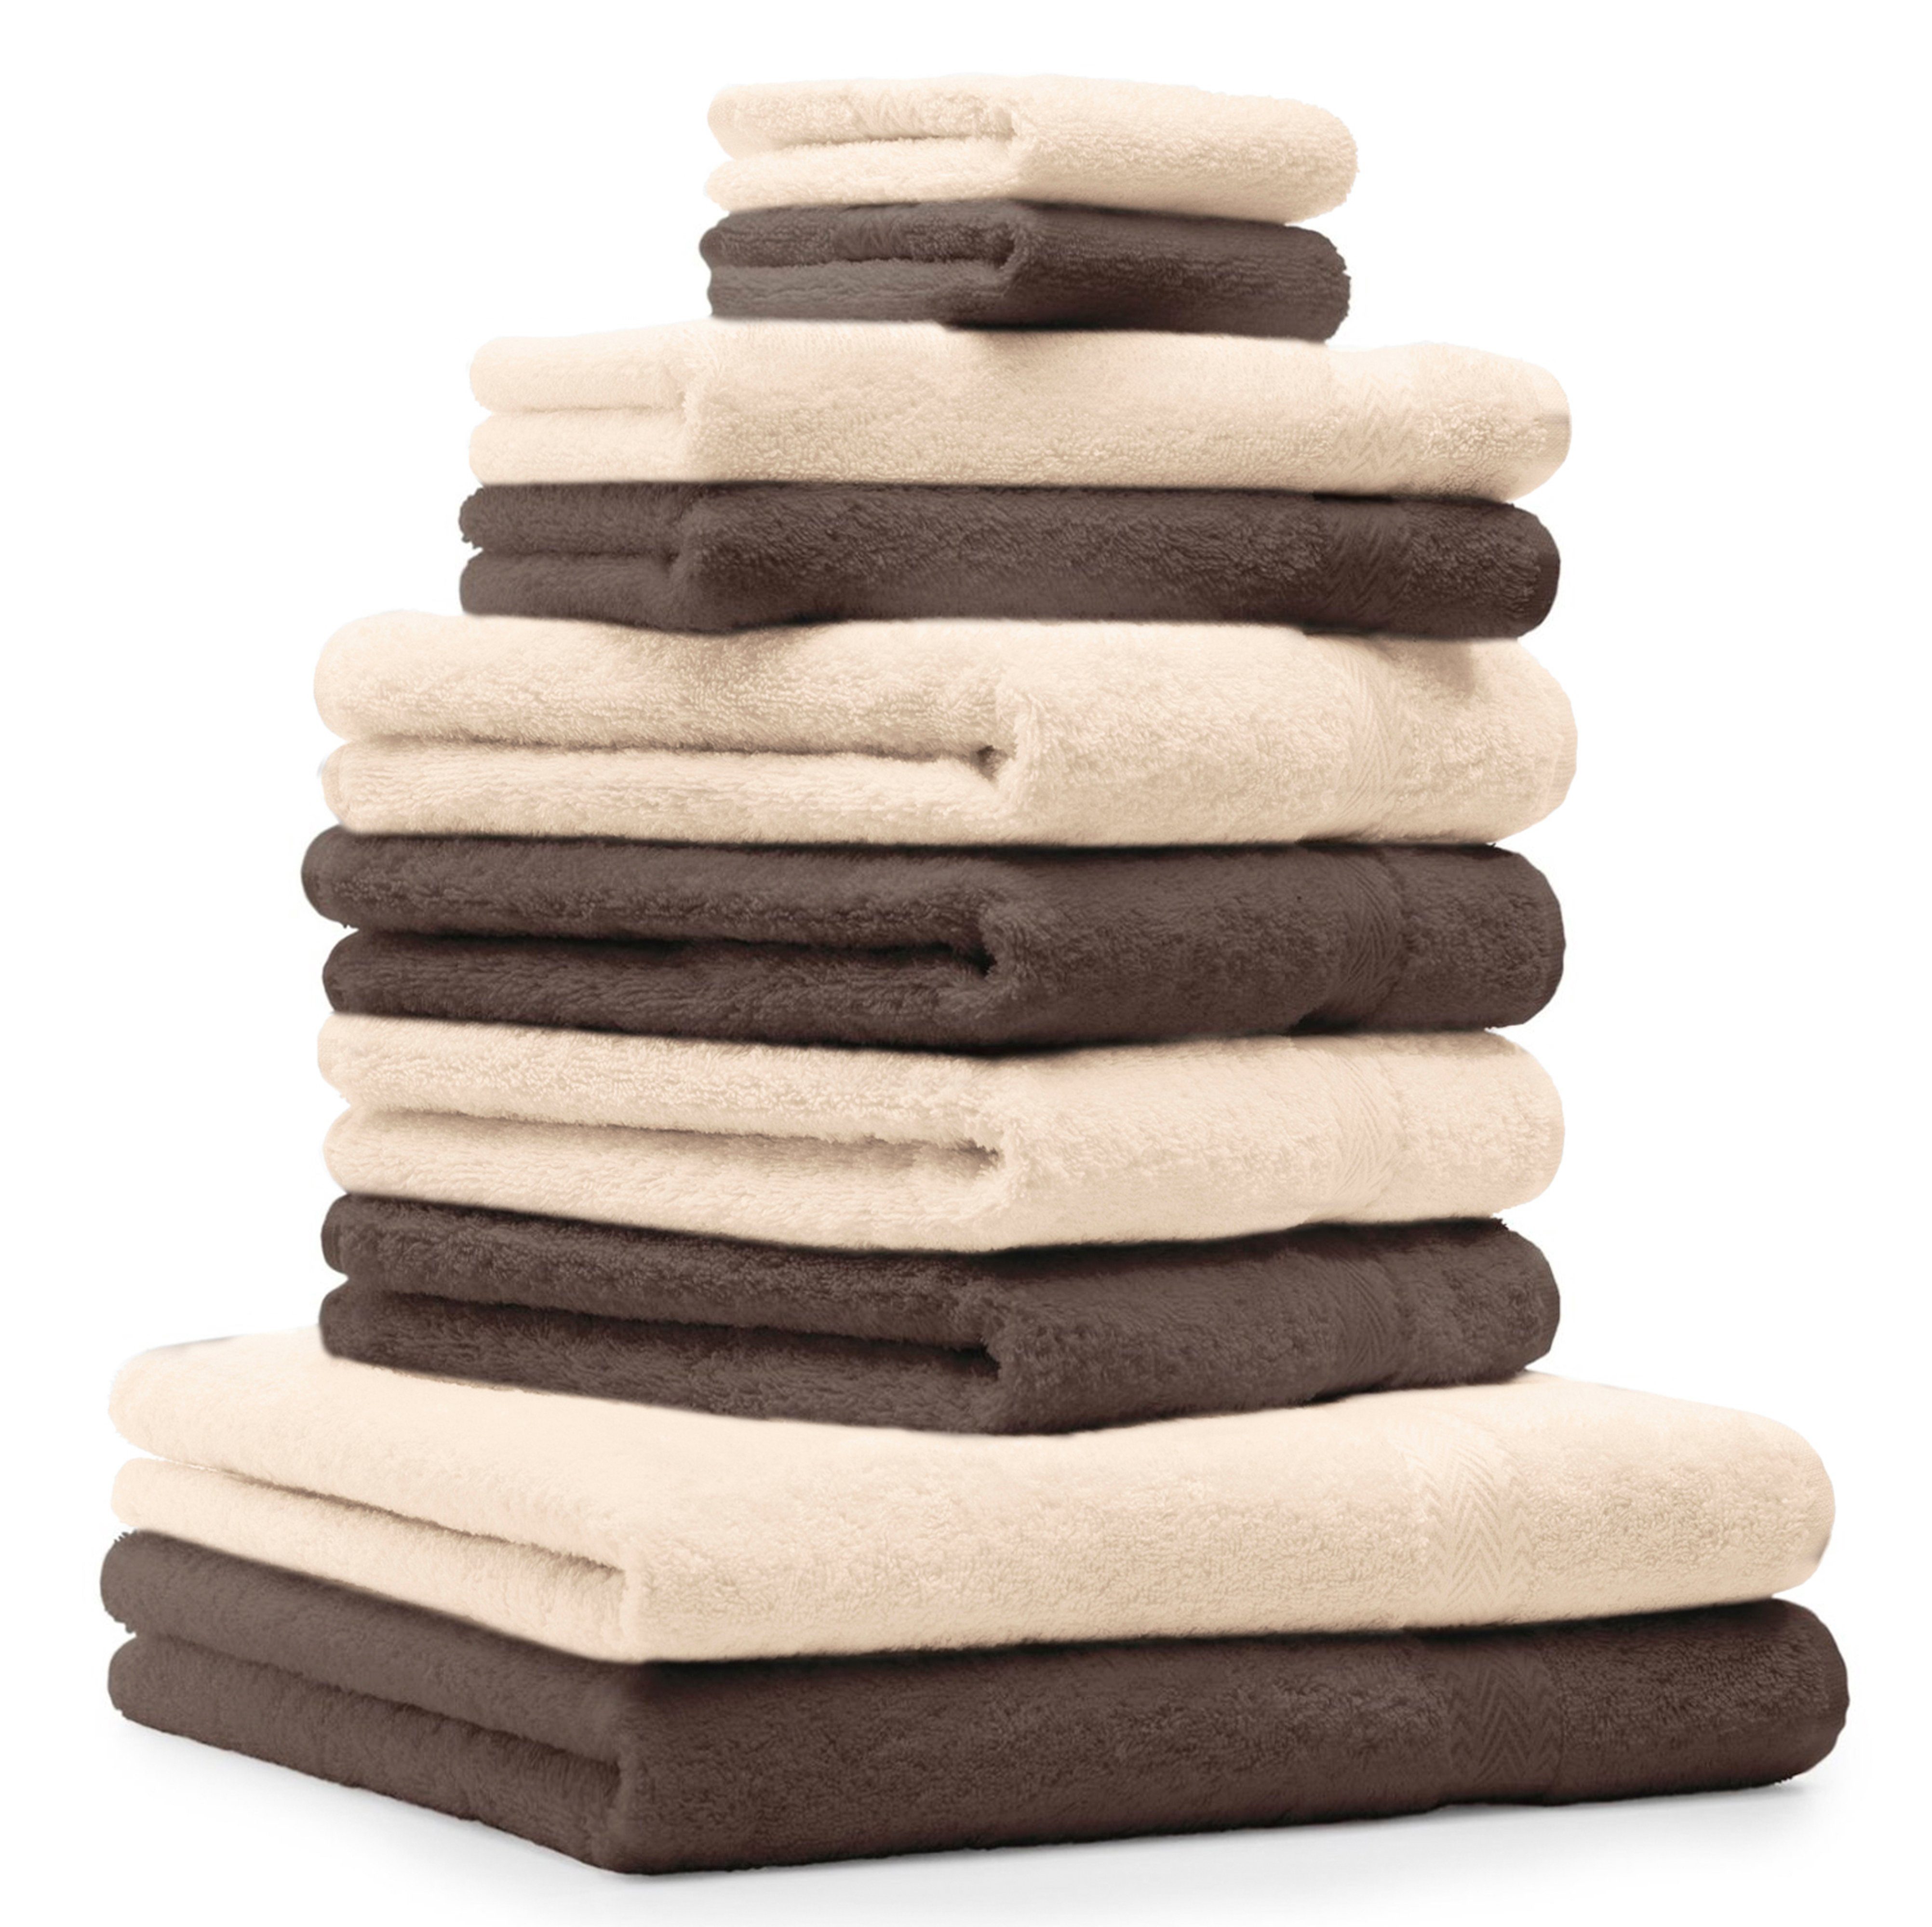 Betz Handtuch Set 10-TLG. Handtuch-Set Classic Farbe nussbraun und beige, 100% Baumwolle